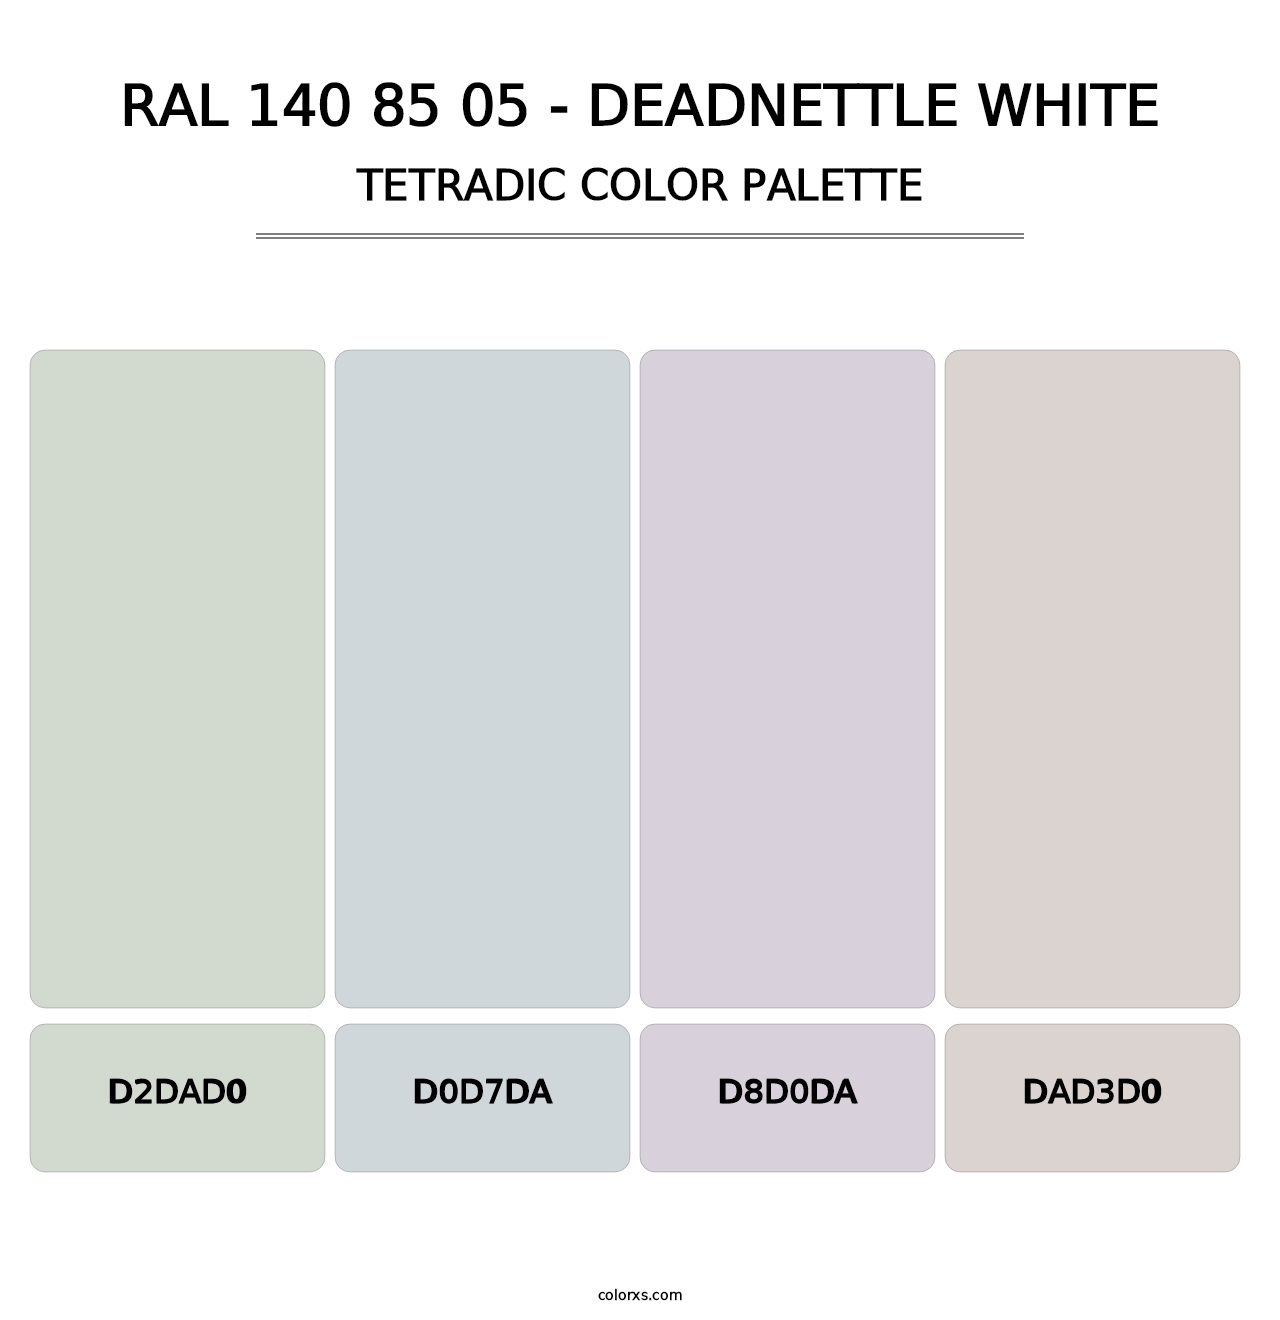 RAL 140 85 05 - Deadnettle White - Tetradic Color Palette